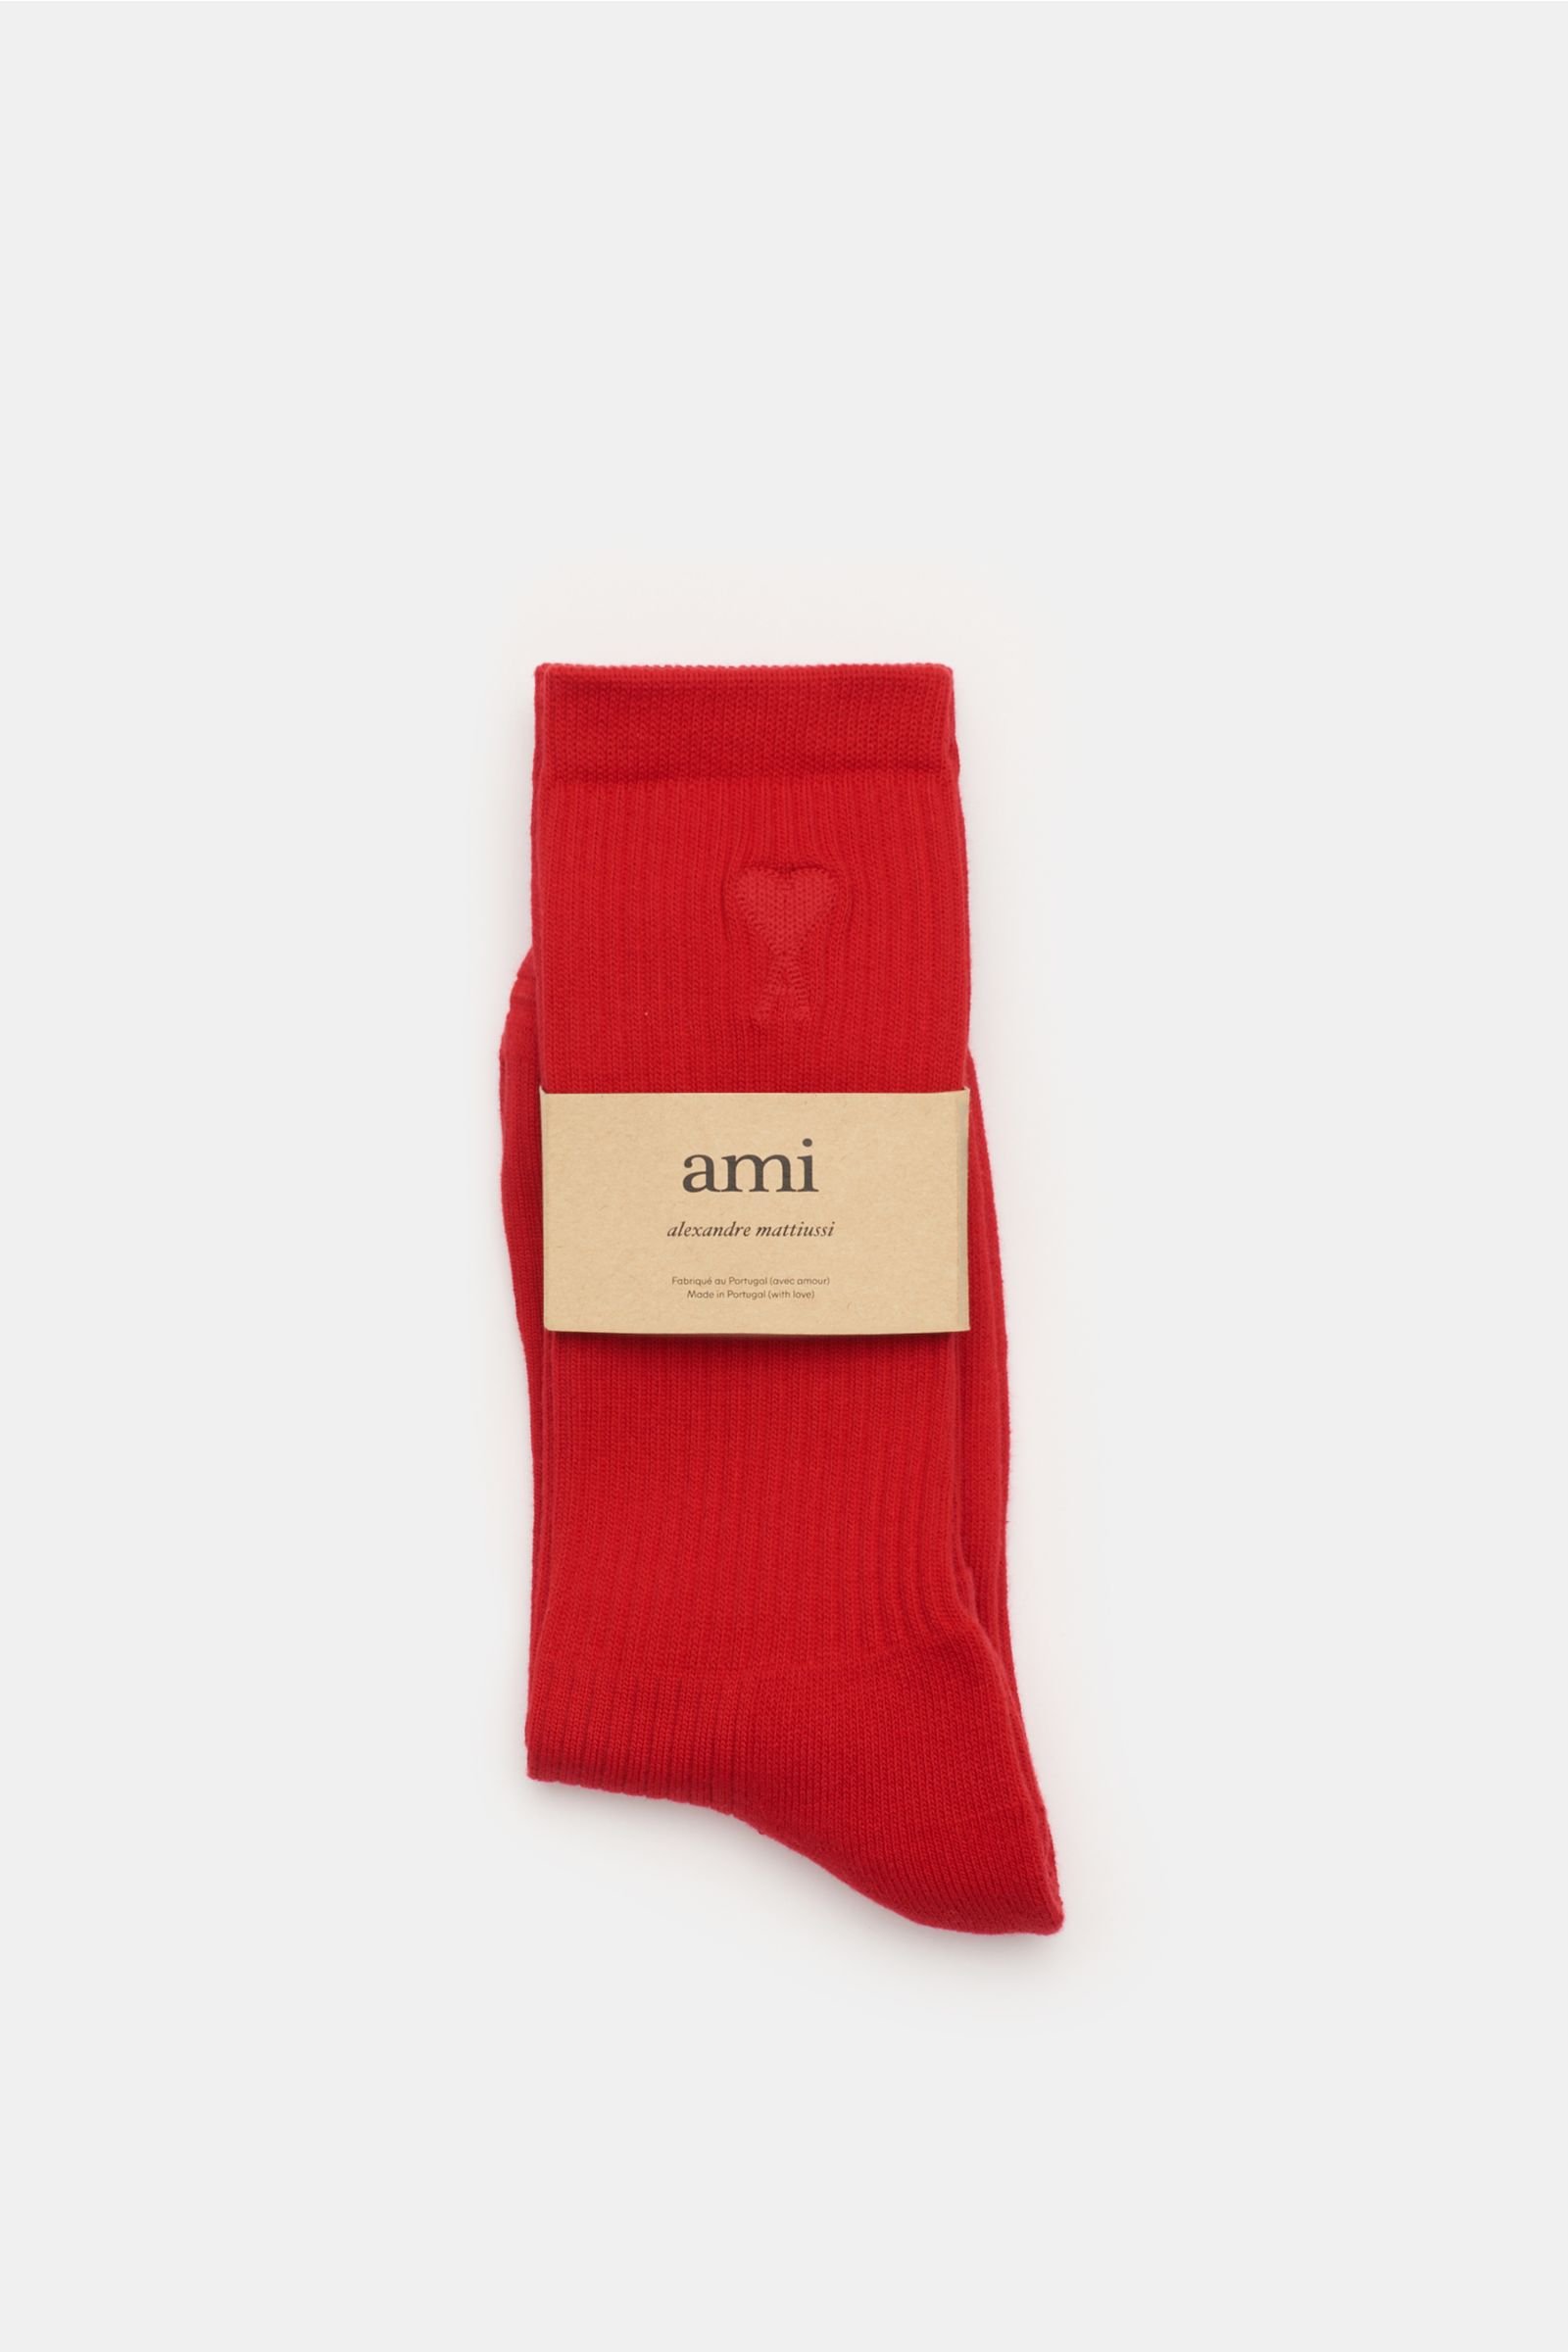 Socks pack of 3 pairs red/navy/cream